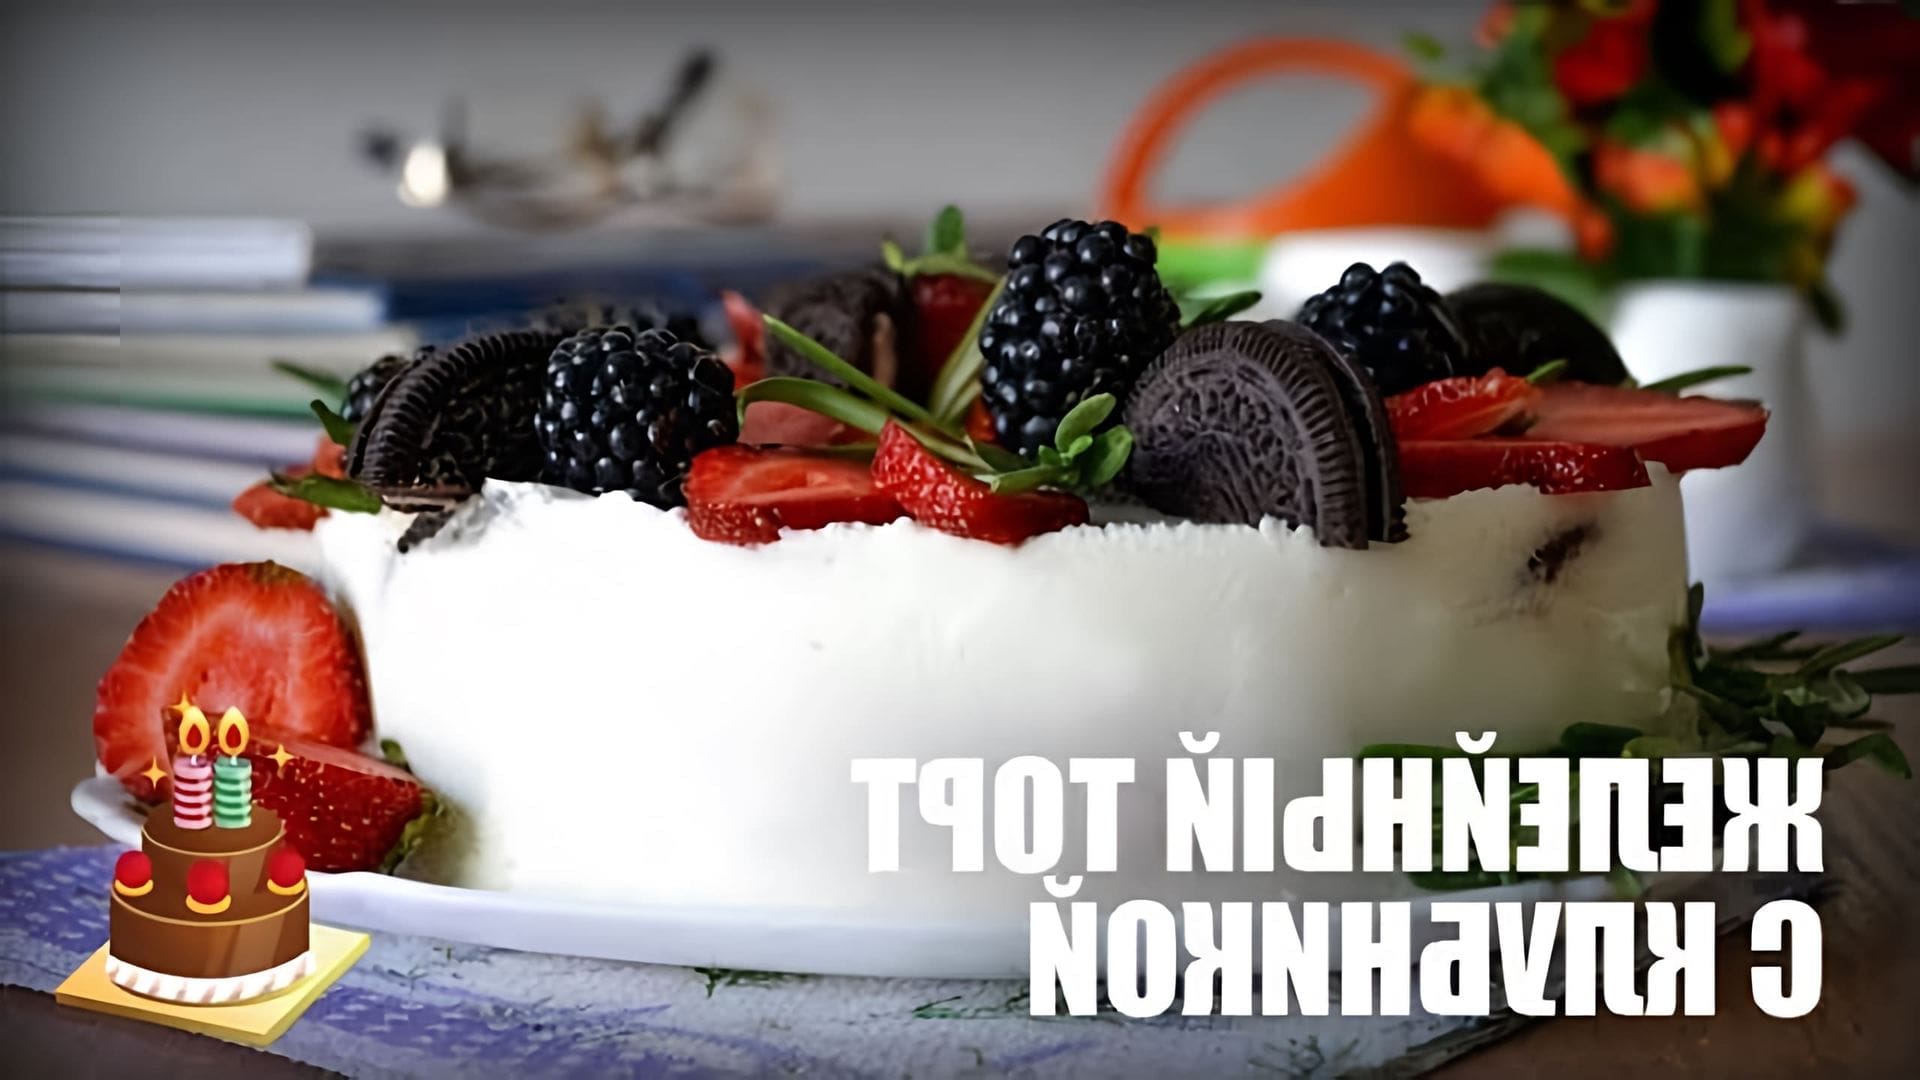 В этом видео представлен рецепт желейного торта с клубникой